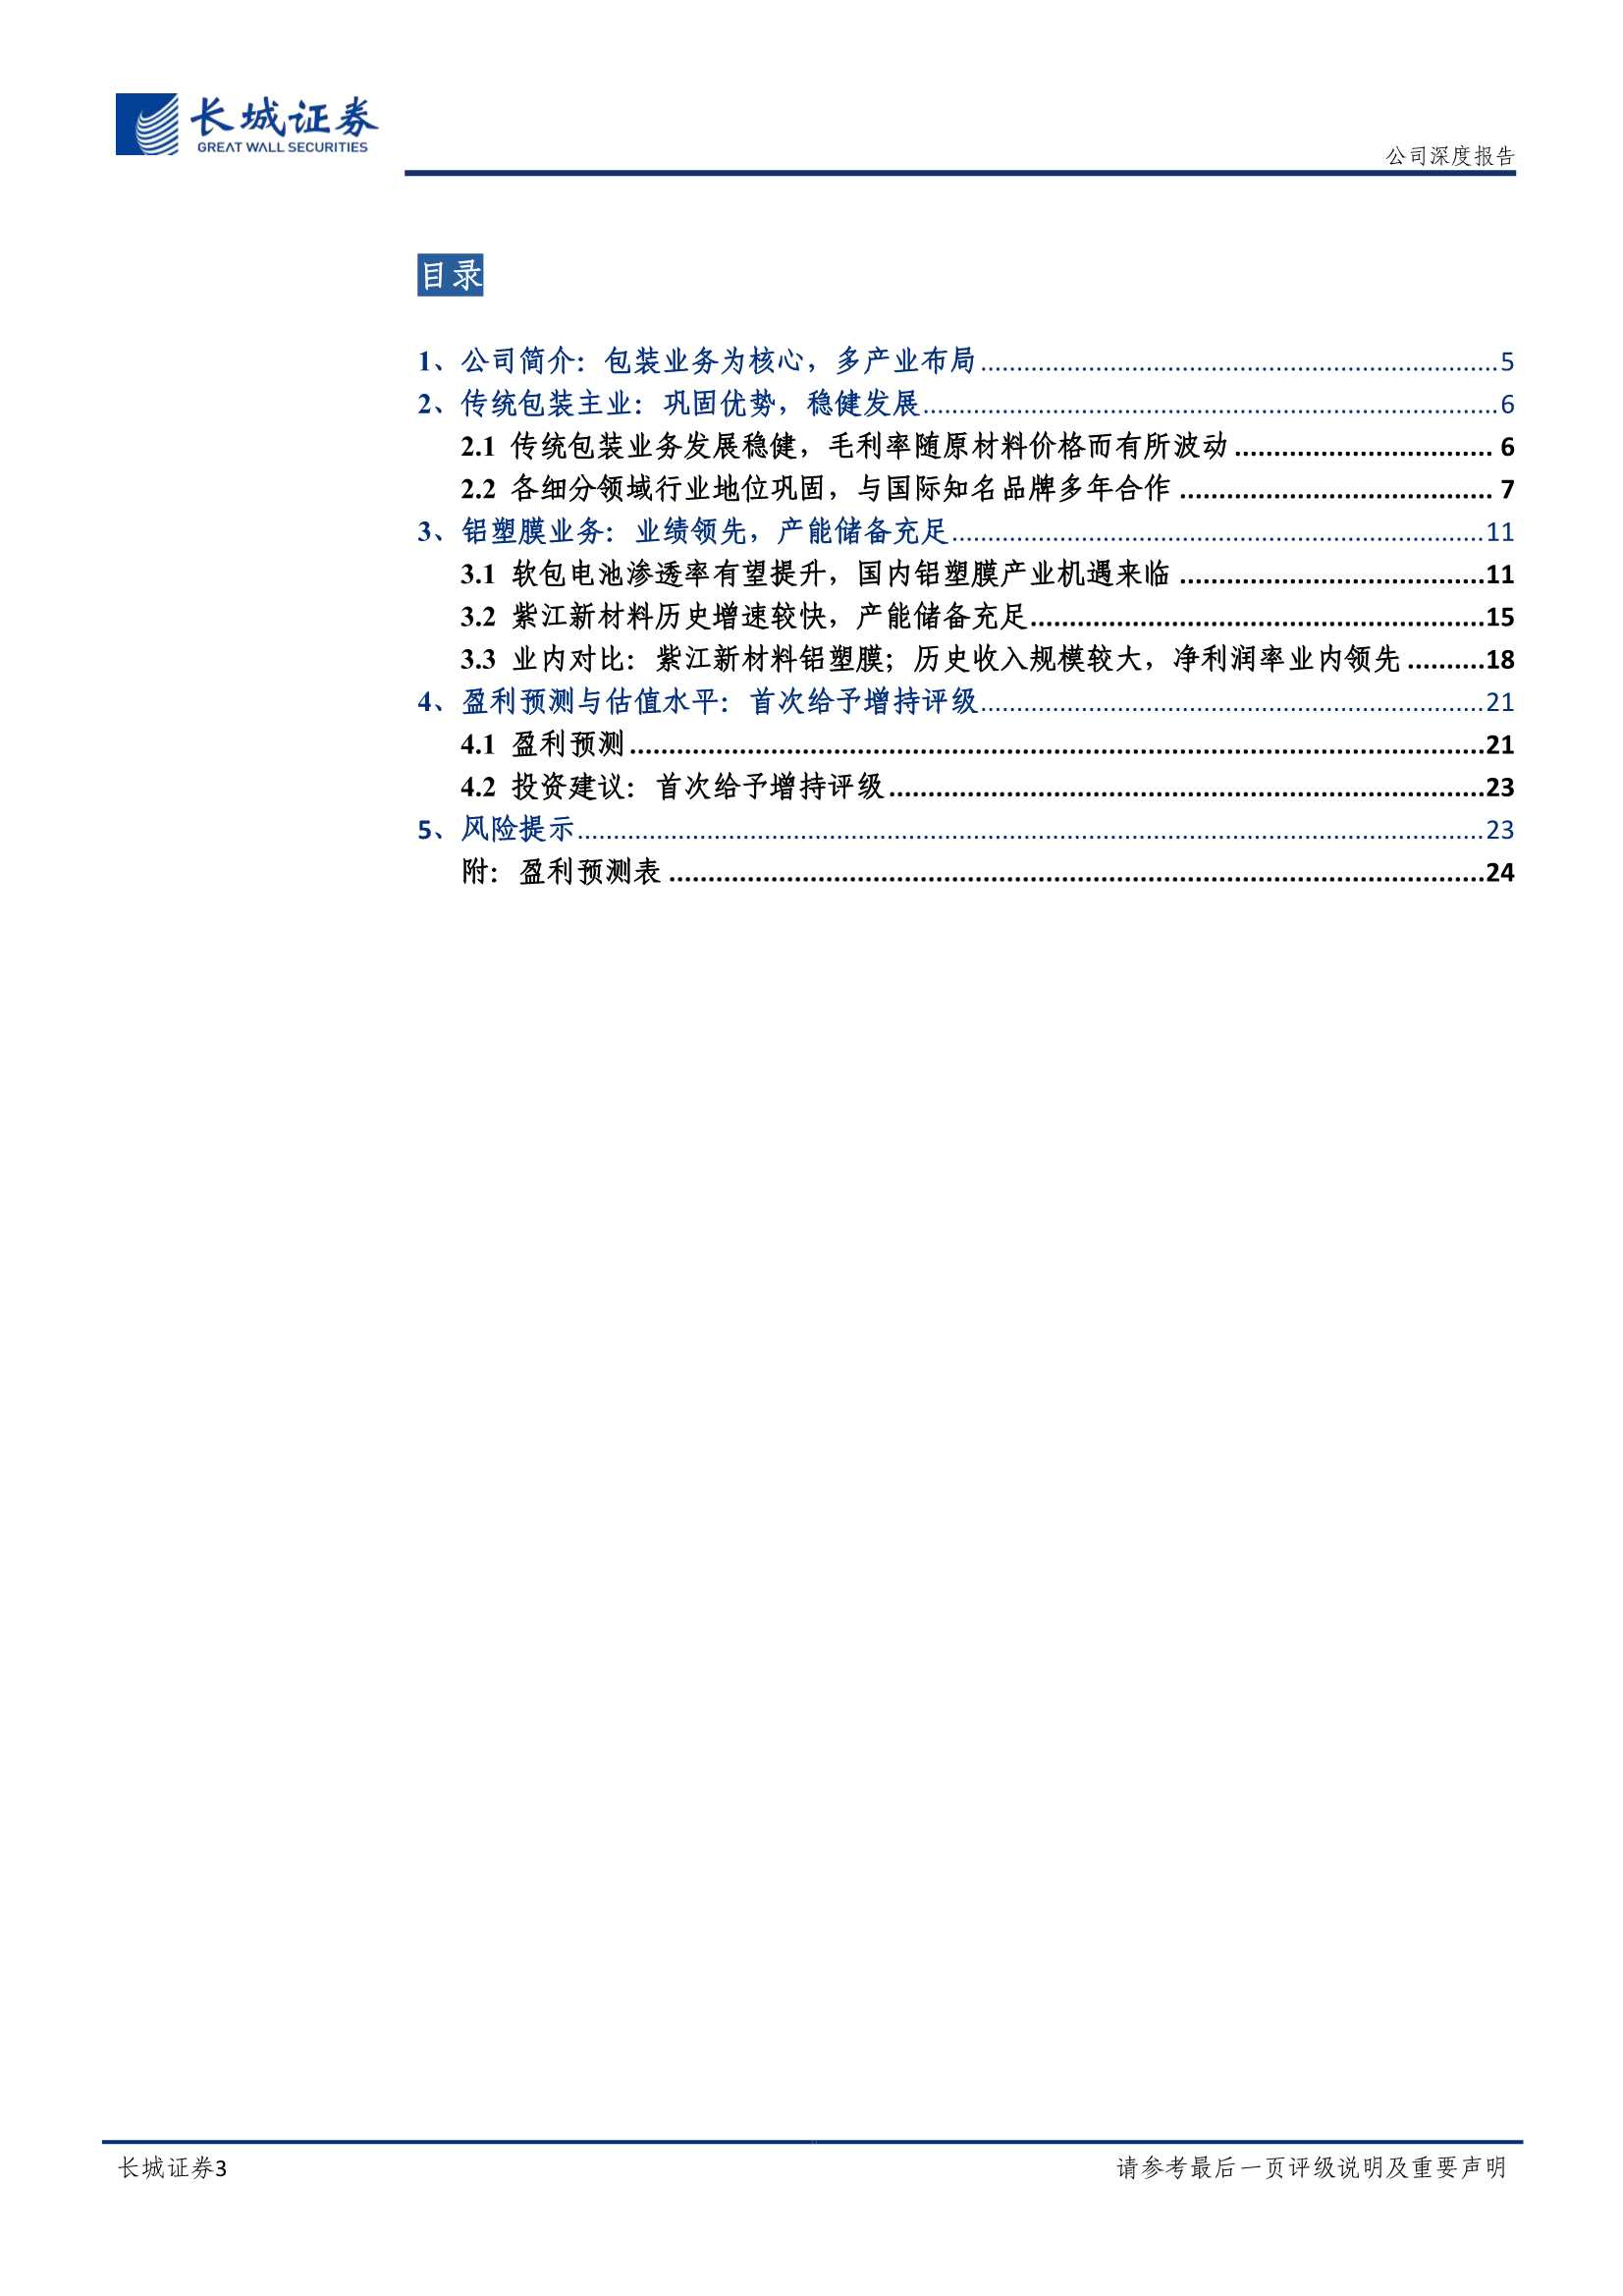 紫江企业-600210-公司深度报告：包装主业稳健发展，铝塑膜业务前景向好-20220330-长城证券-25页